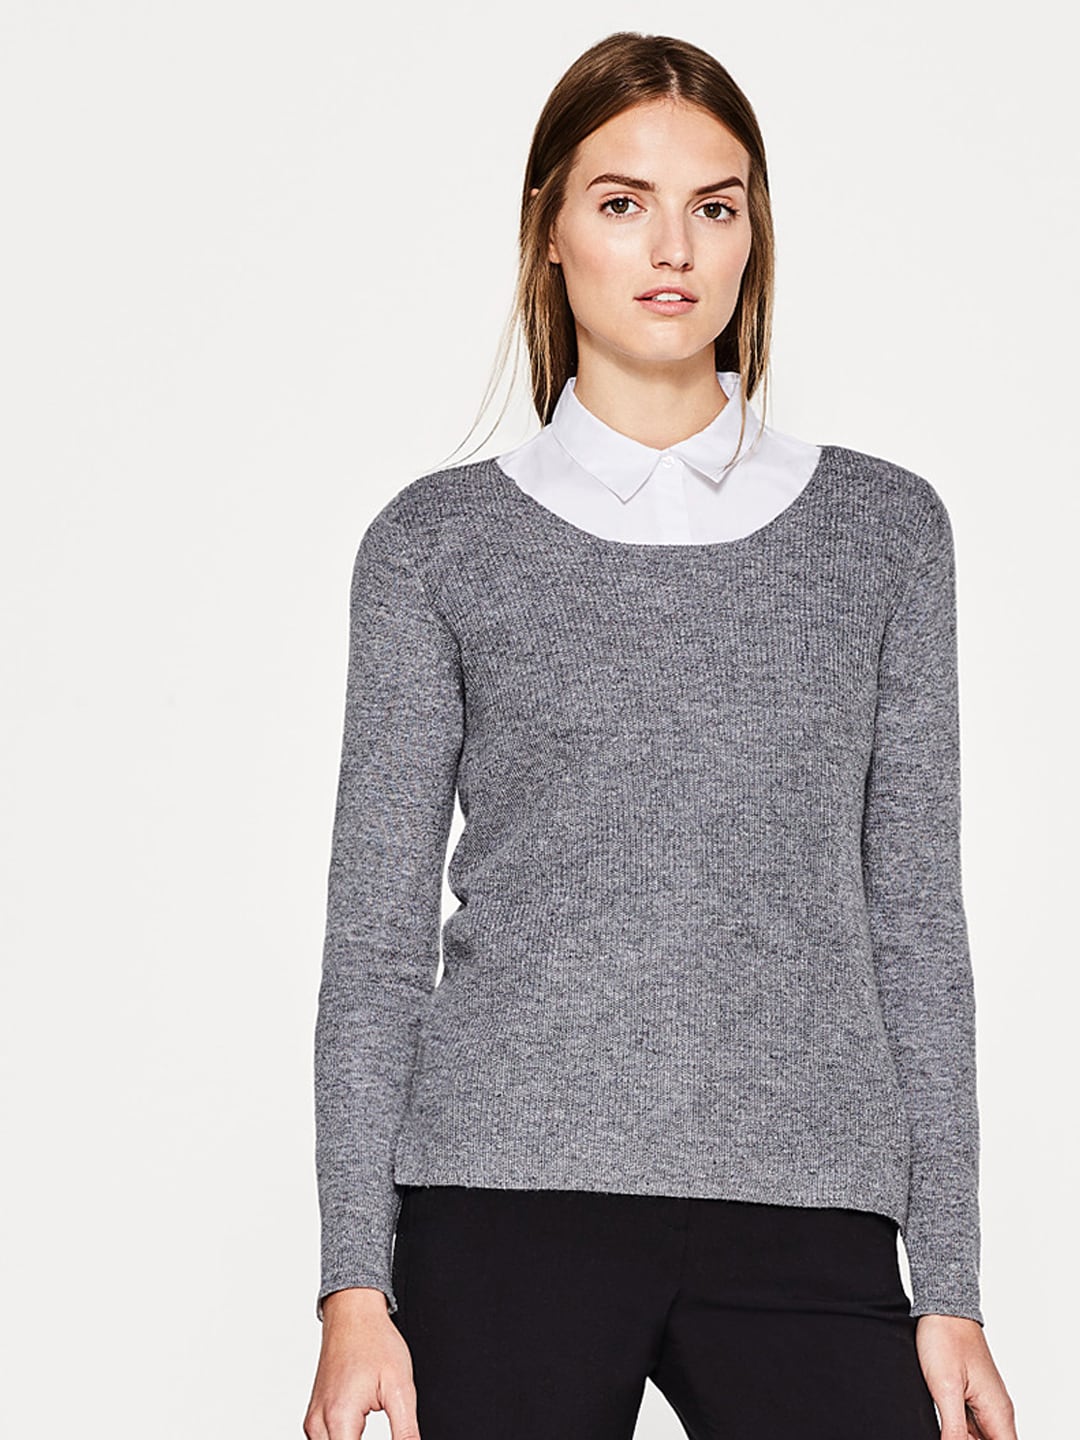 Sweaters for Women - Buy Womens Sweaters Online - Myntra